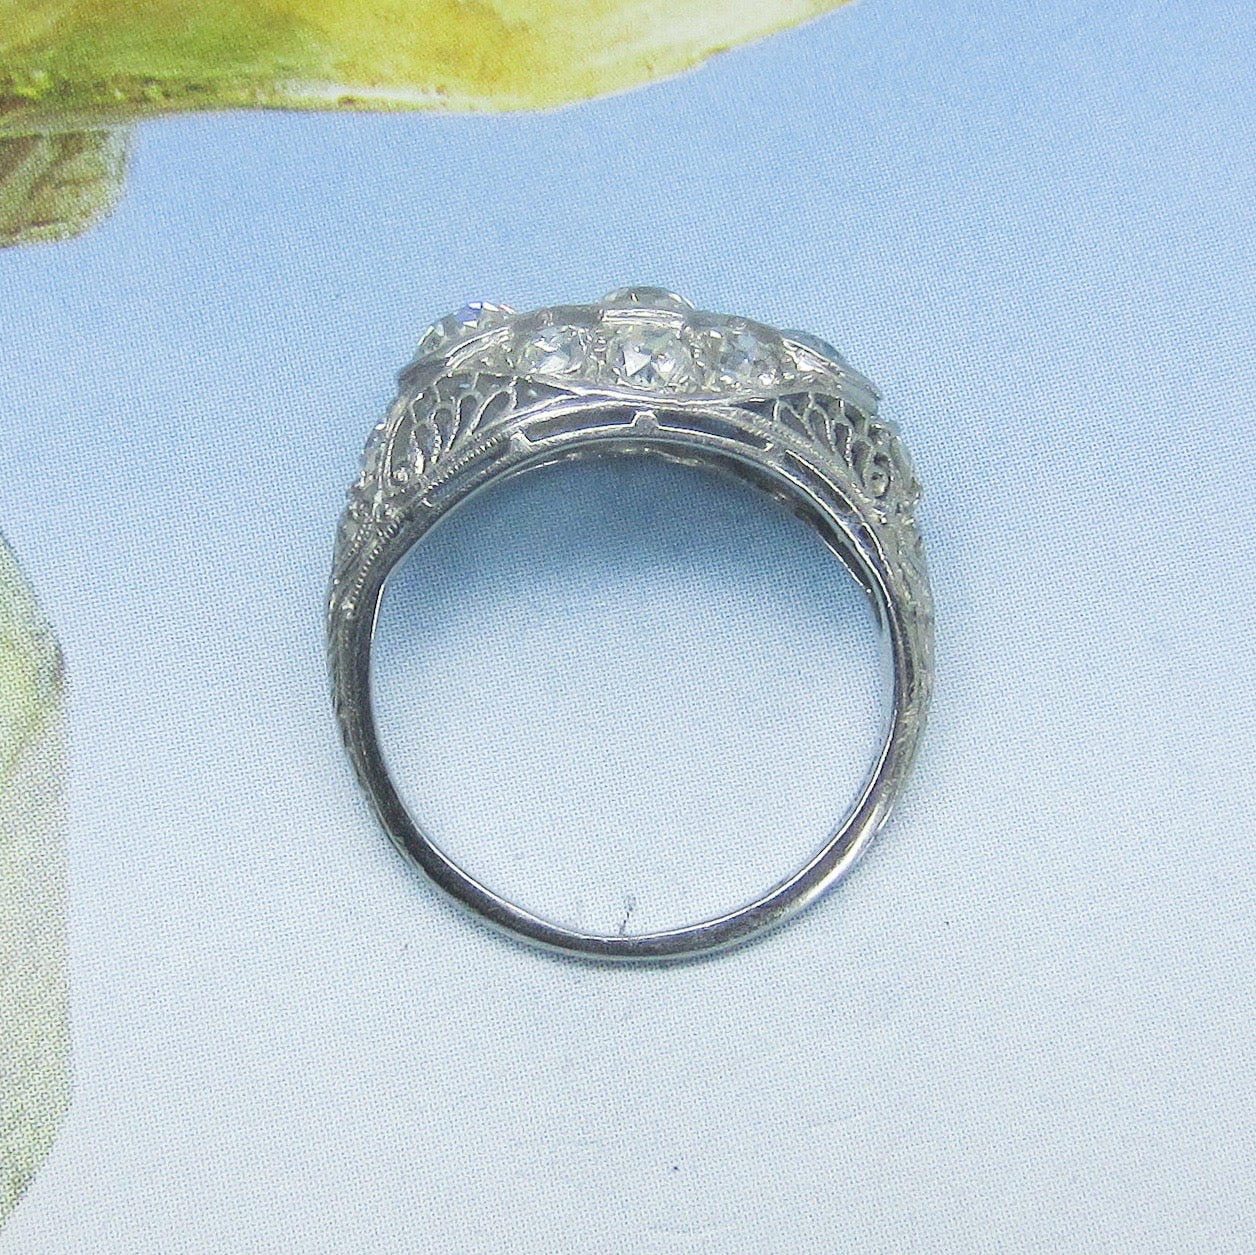 Art Deco Old Mine Diamond 1.62ctw Filigree Ring Platinum c. 1930